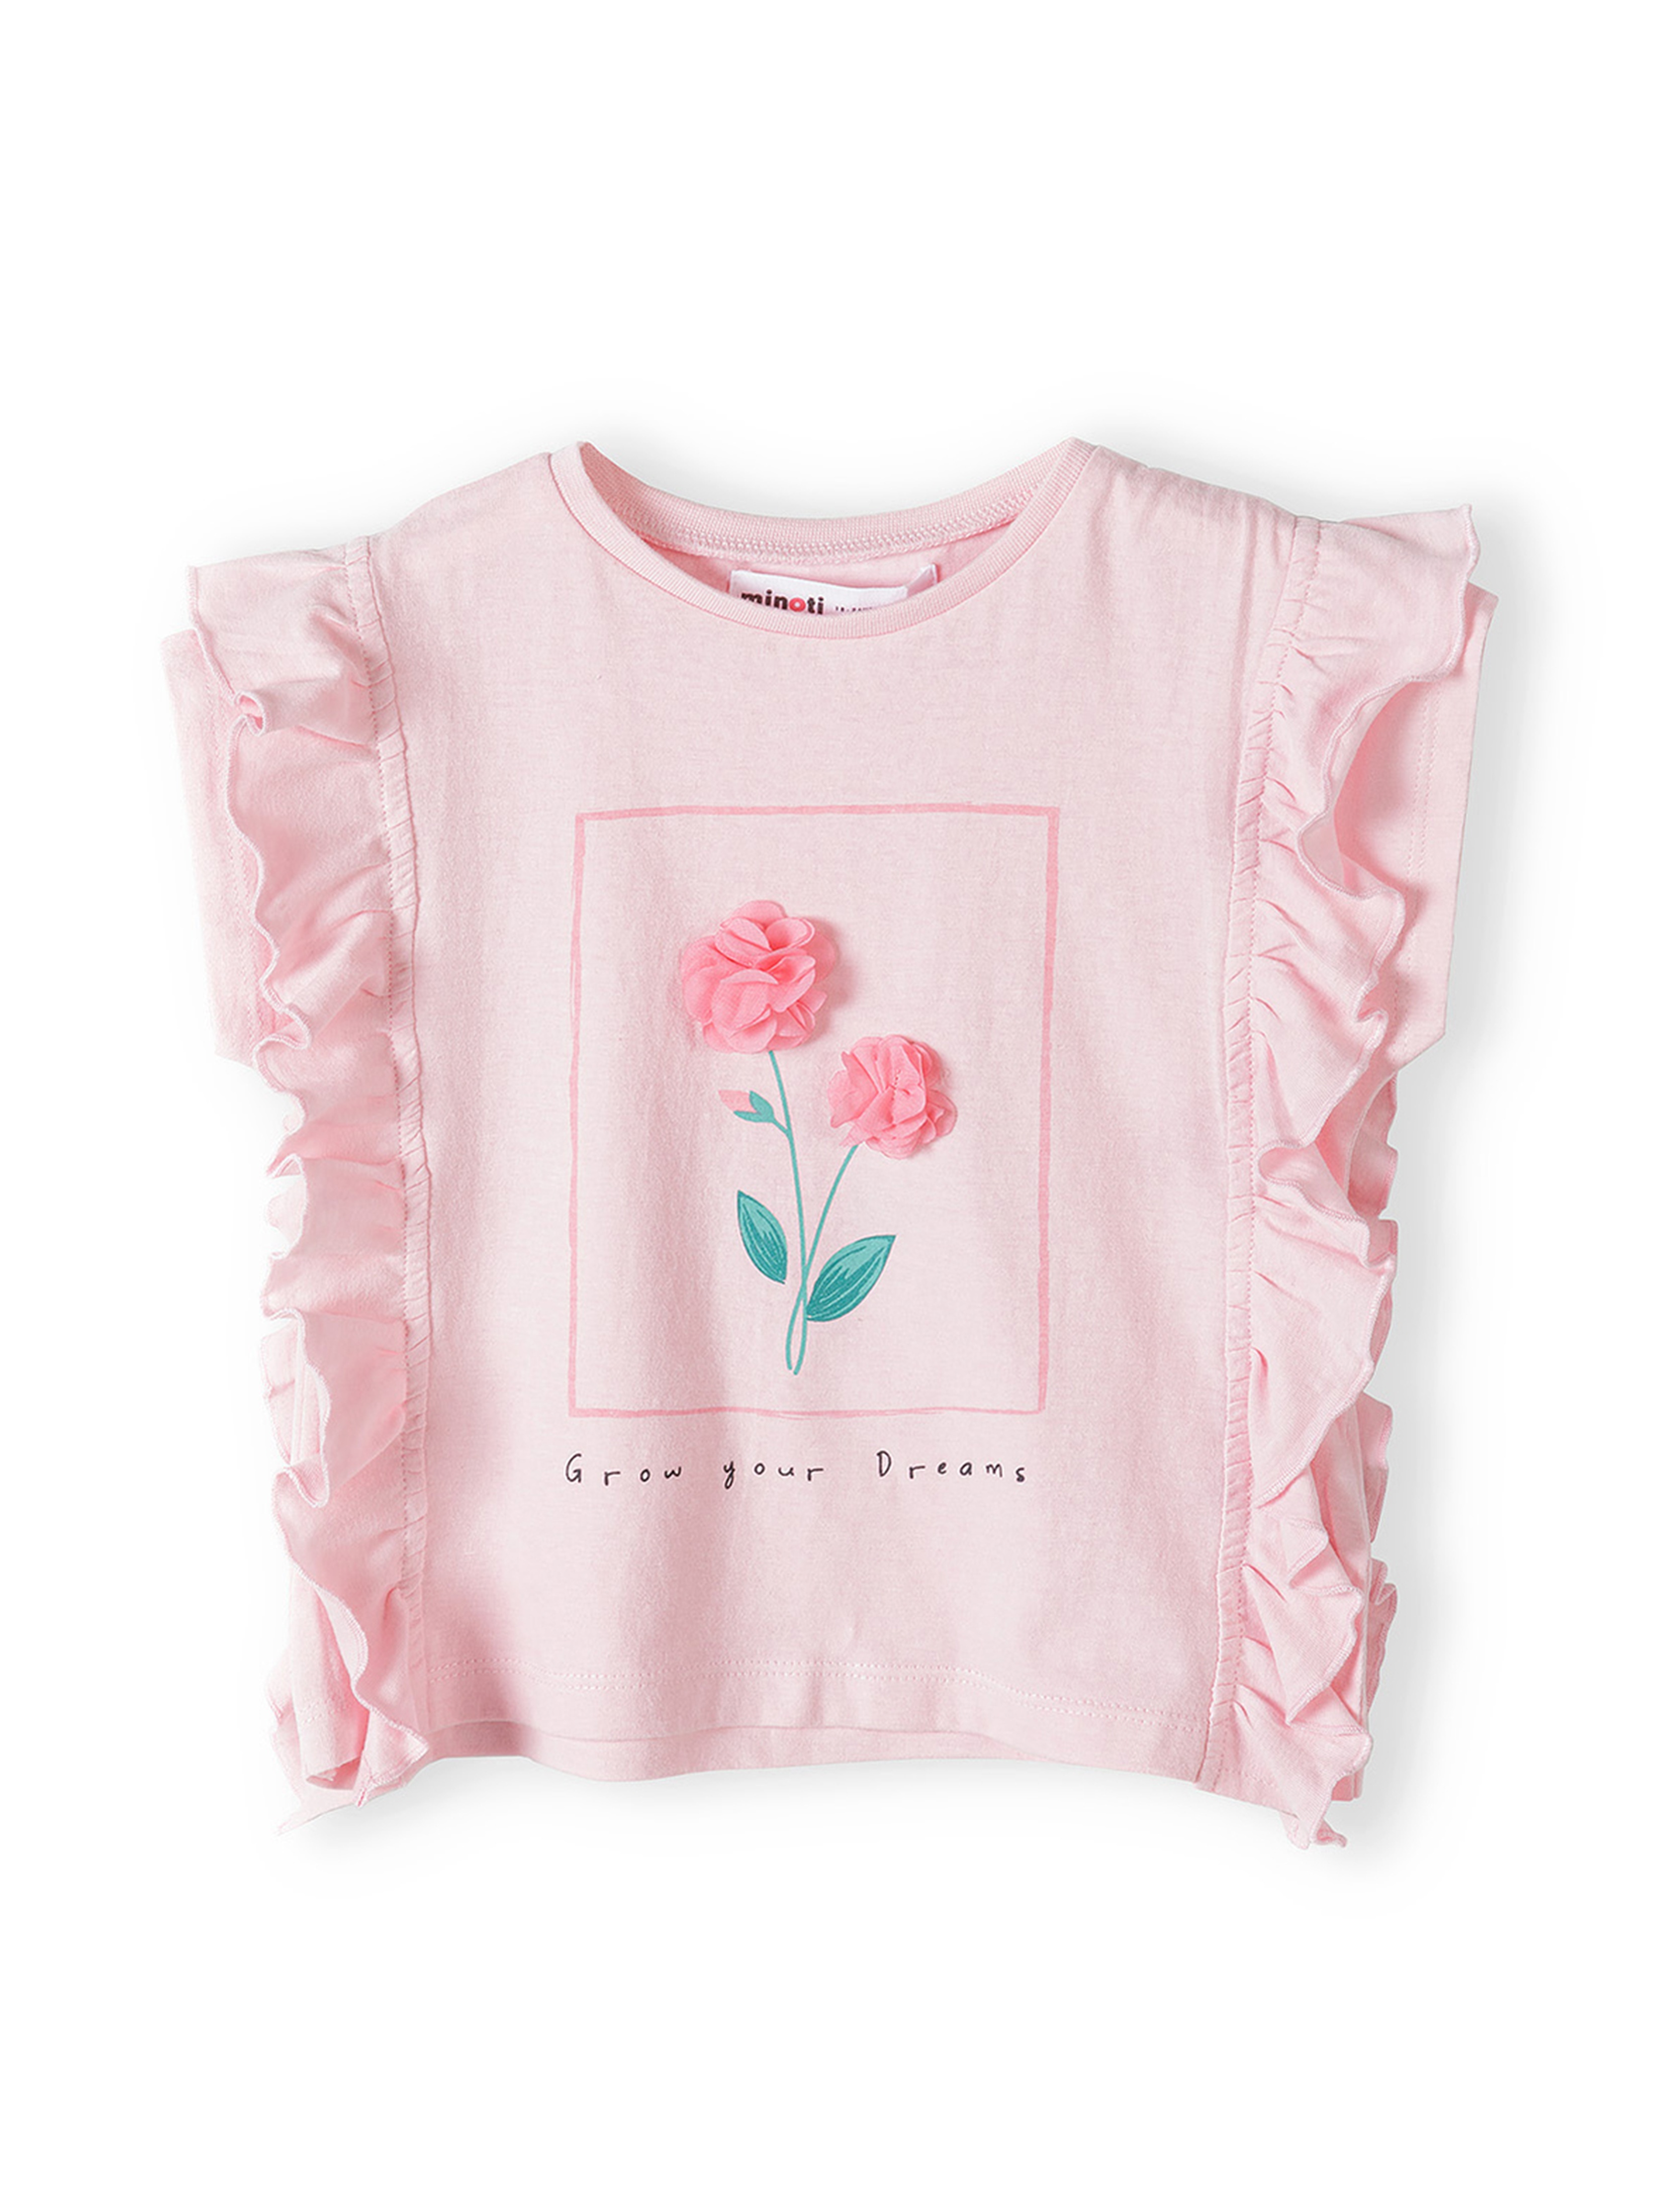 Komplet niemowlęcy - różowa bluzka + białe legginsy w kwiatki